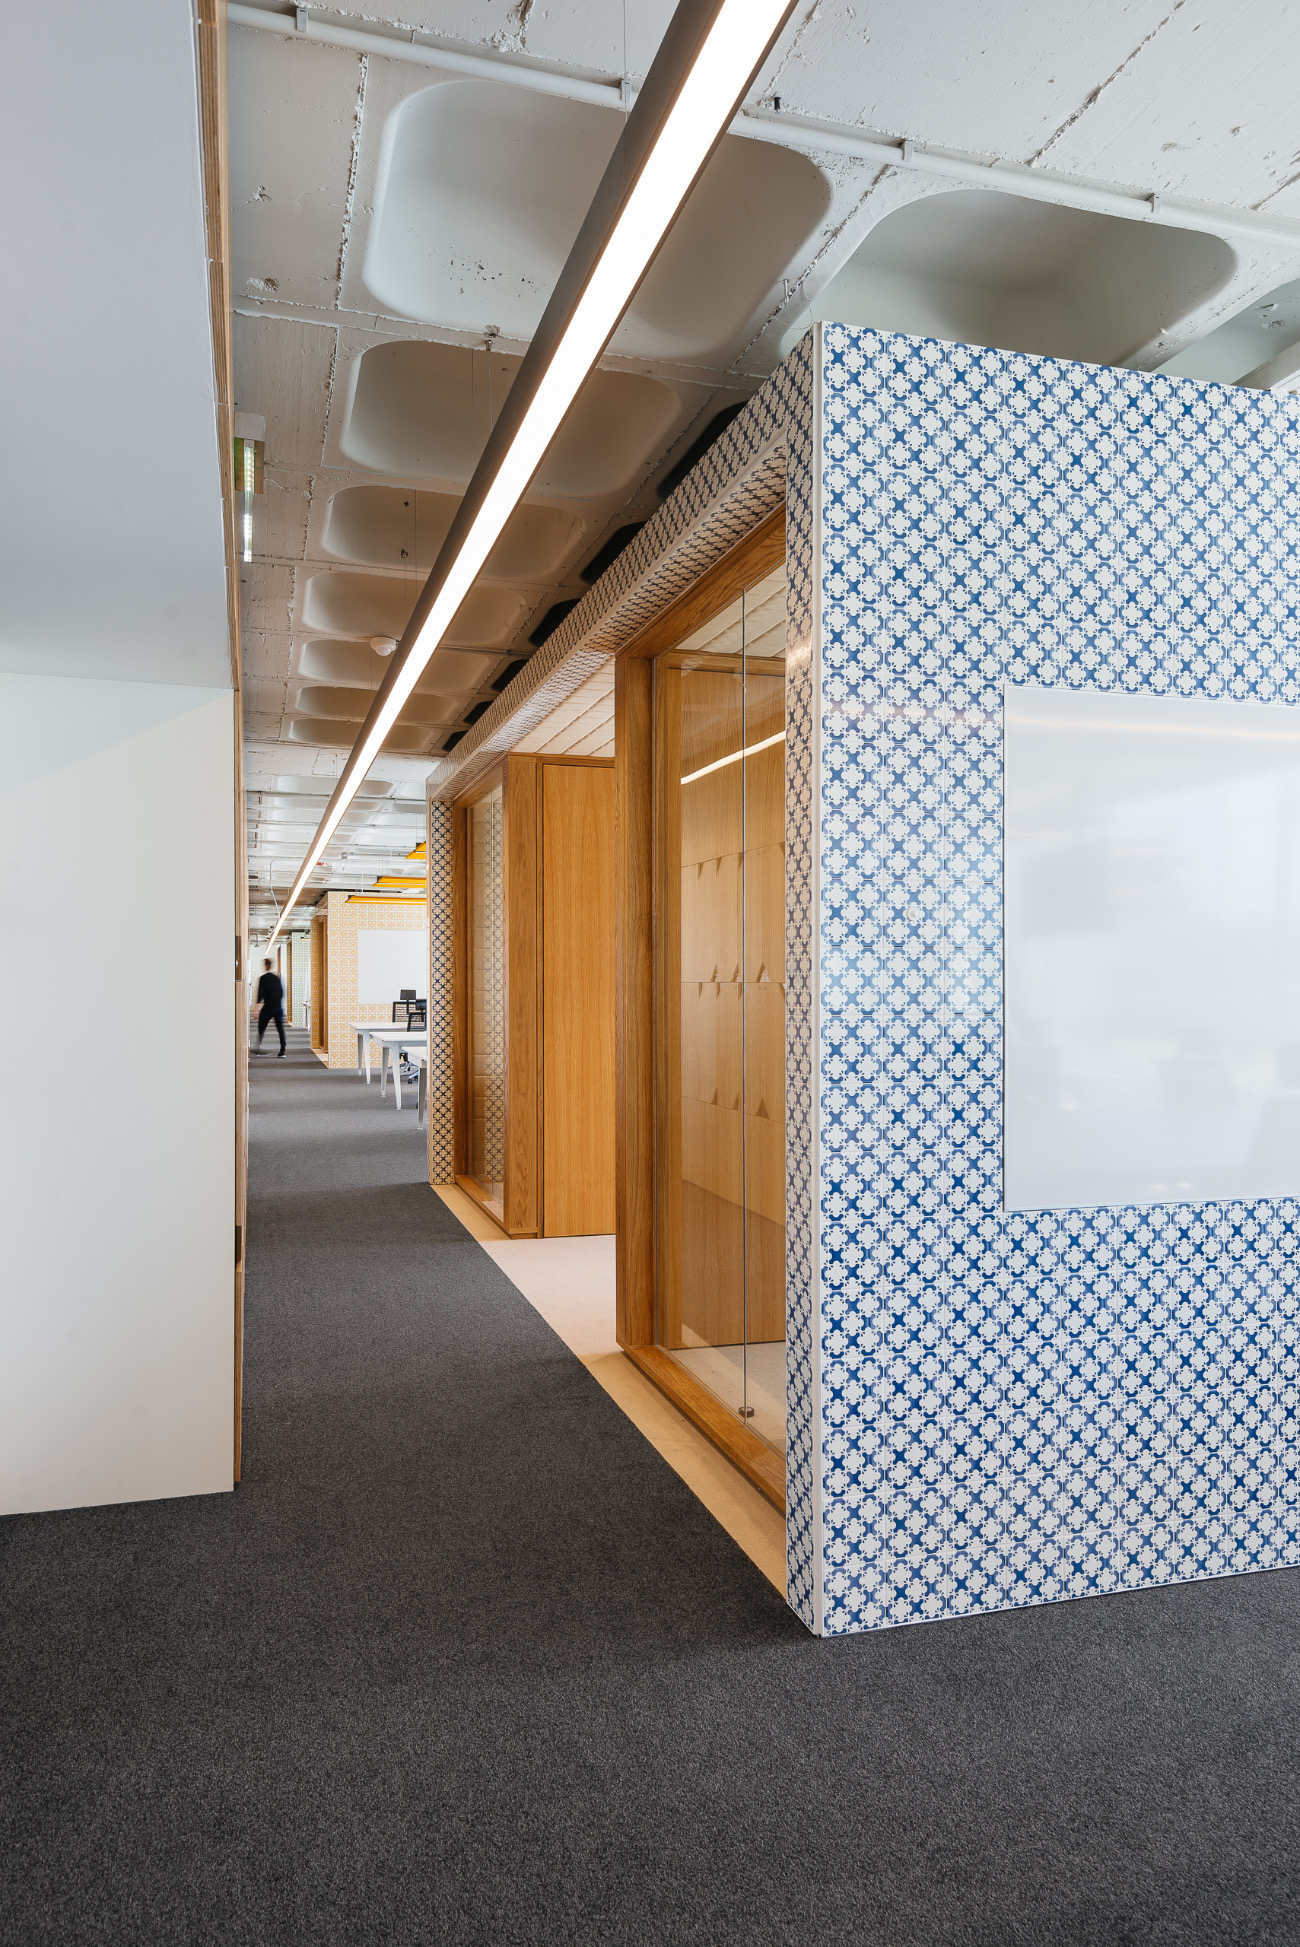 【OLXのオフィスデザイン】- ポルトガル, リスボンの廊下